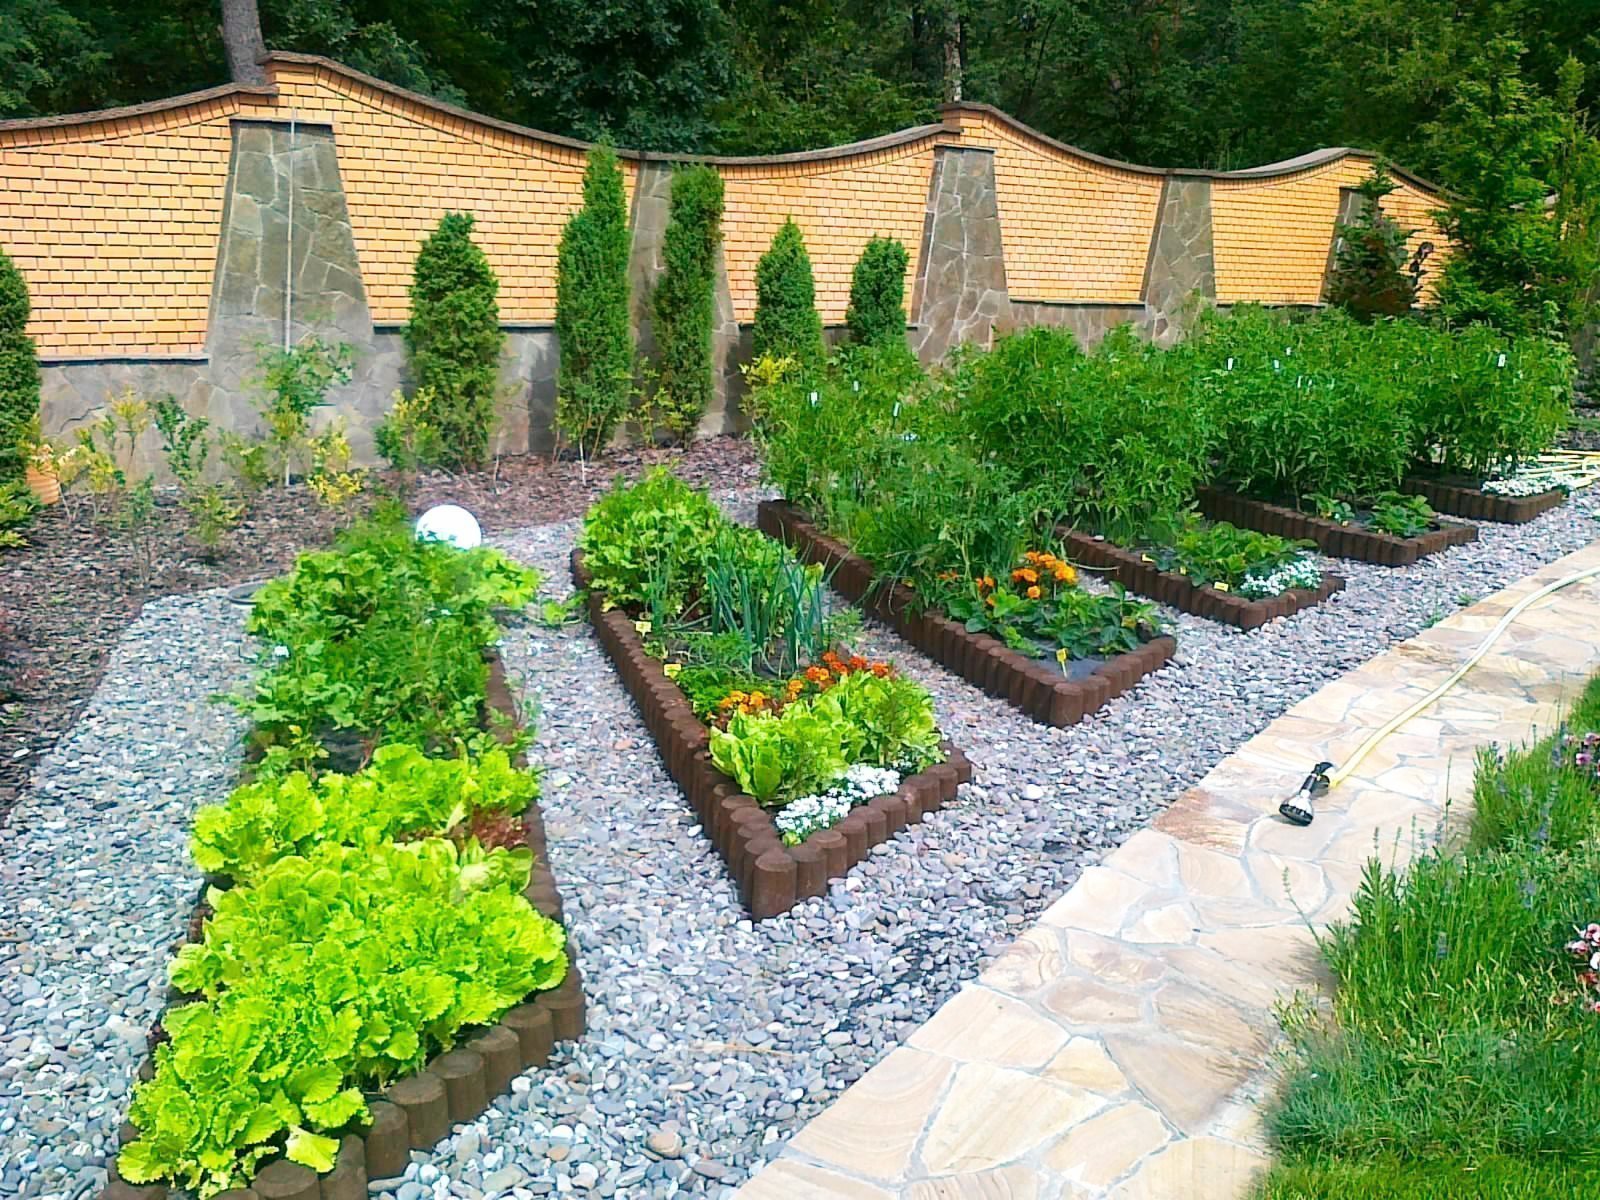 Ландшафтный дизайн дачного участка своими руками на 10 сотках с огородом и зоной отдыха